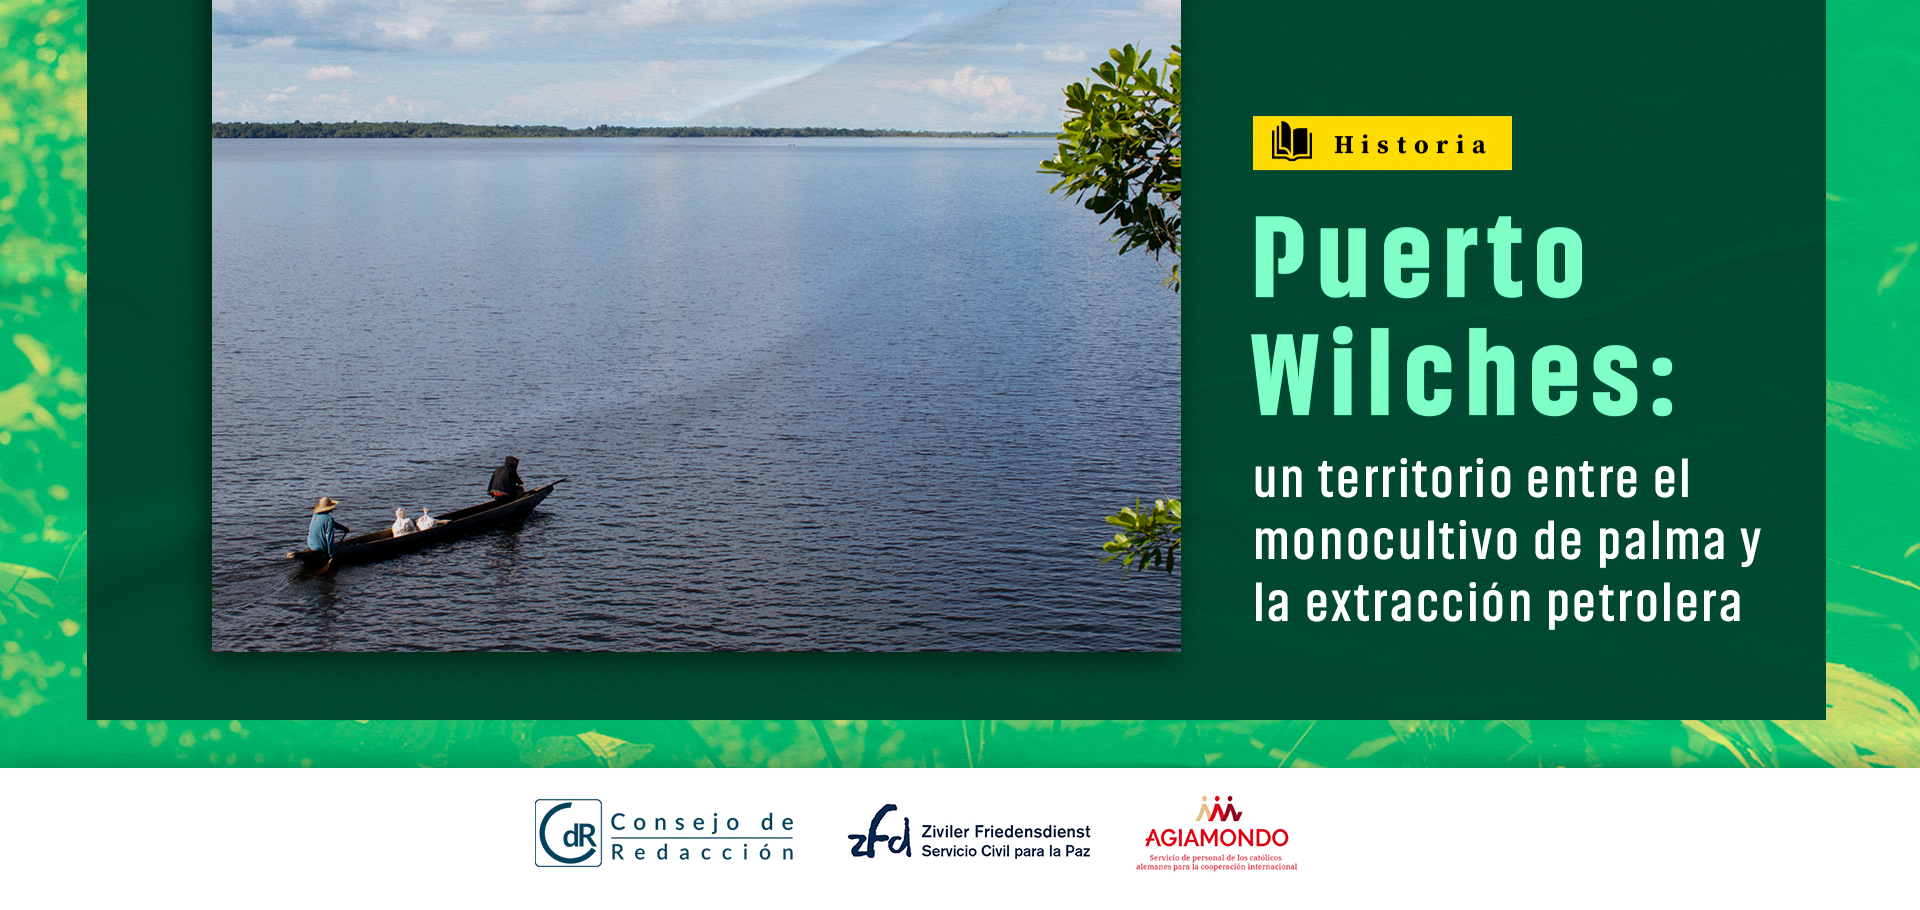 Puerto Wilches: un territorio entre el monocultivo de palma y la extracción petrolera